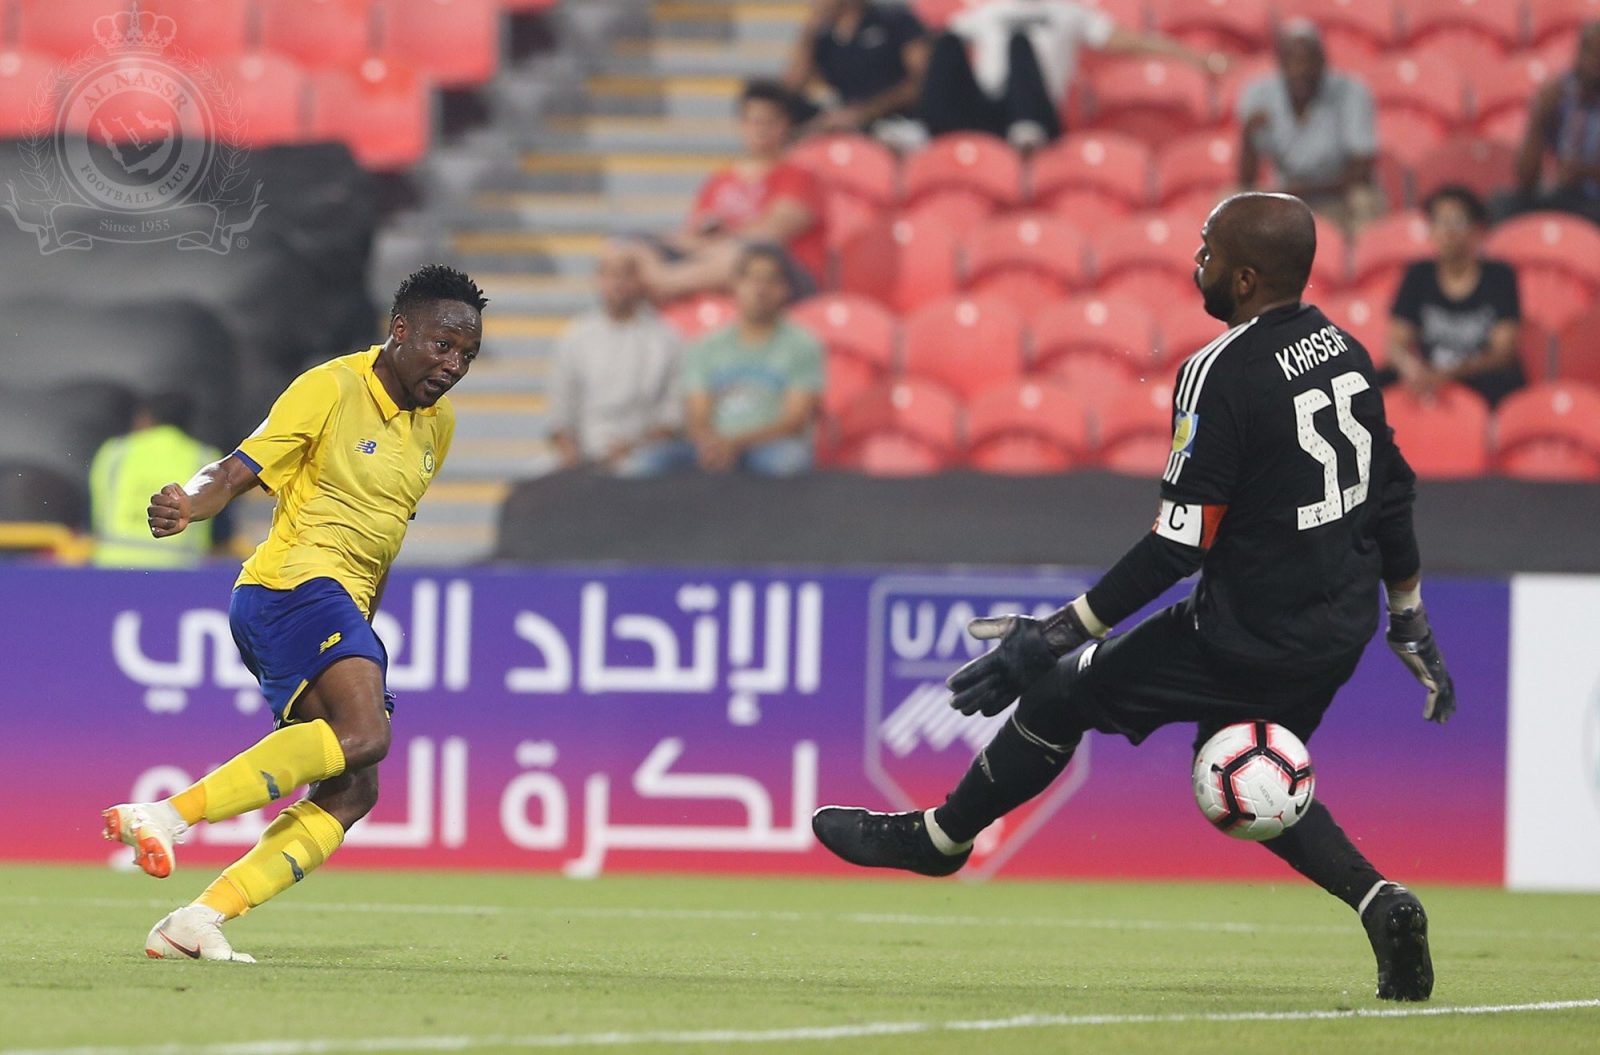 Musa Targets More Goals For Al Nassr After Scoring Debut Vs Al Jazira